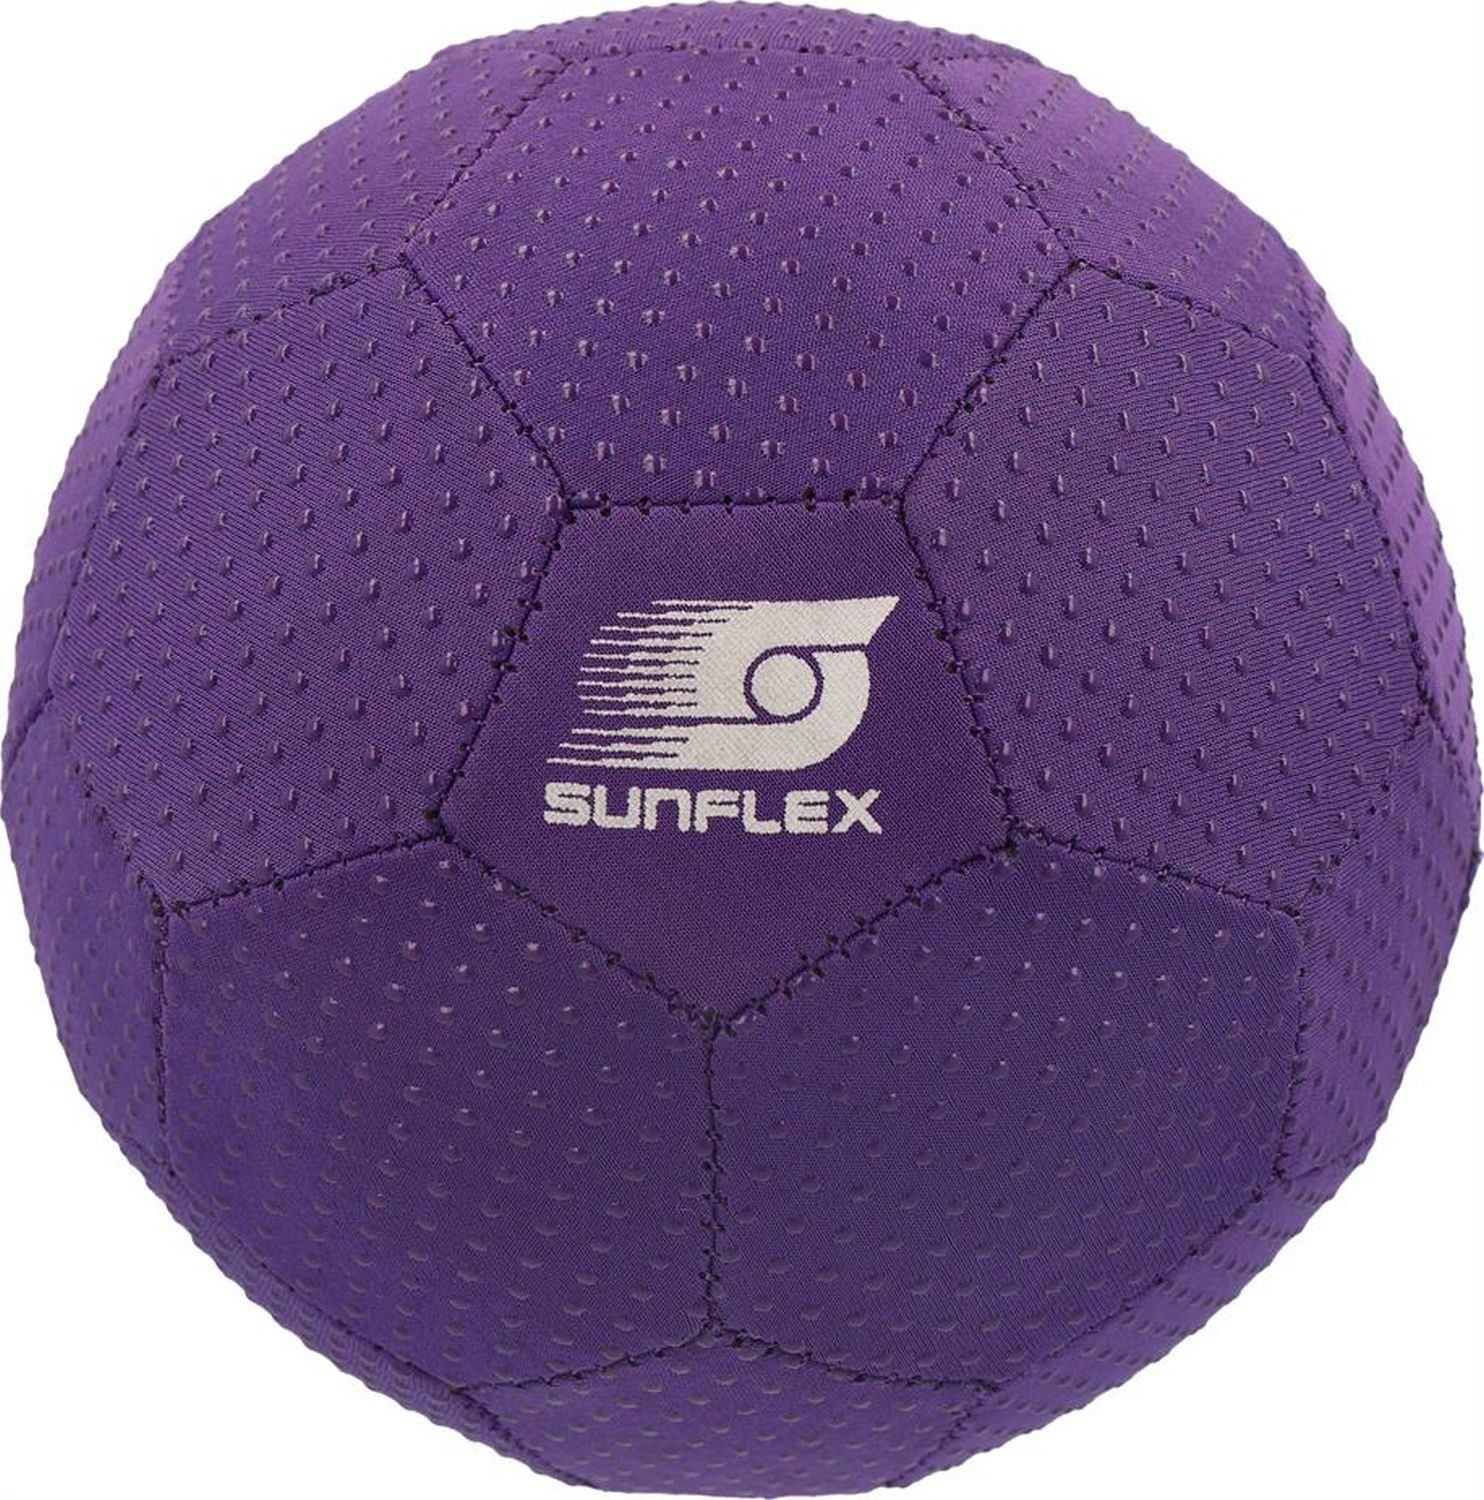 Sunflex Spielball Grippyball Size 3 Lila, Handball Strandball Wasserball Wurfball Fangen Werfen Beachball